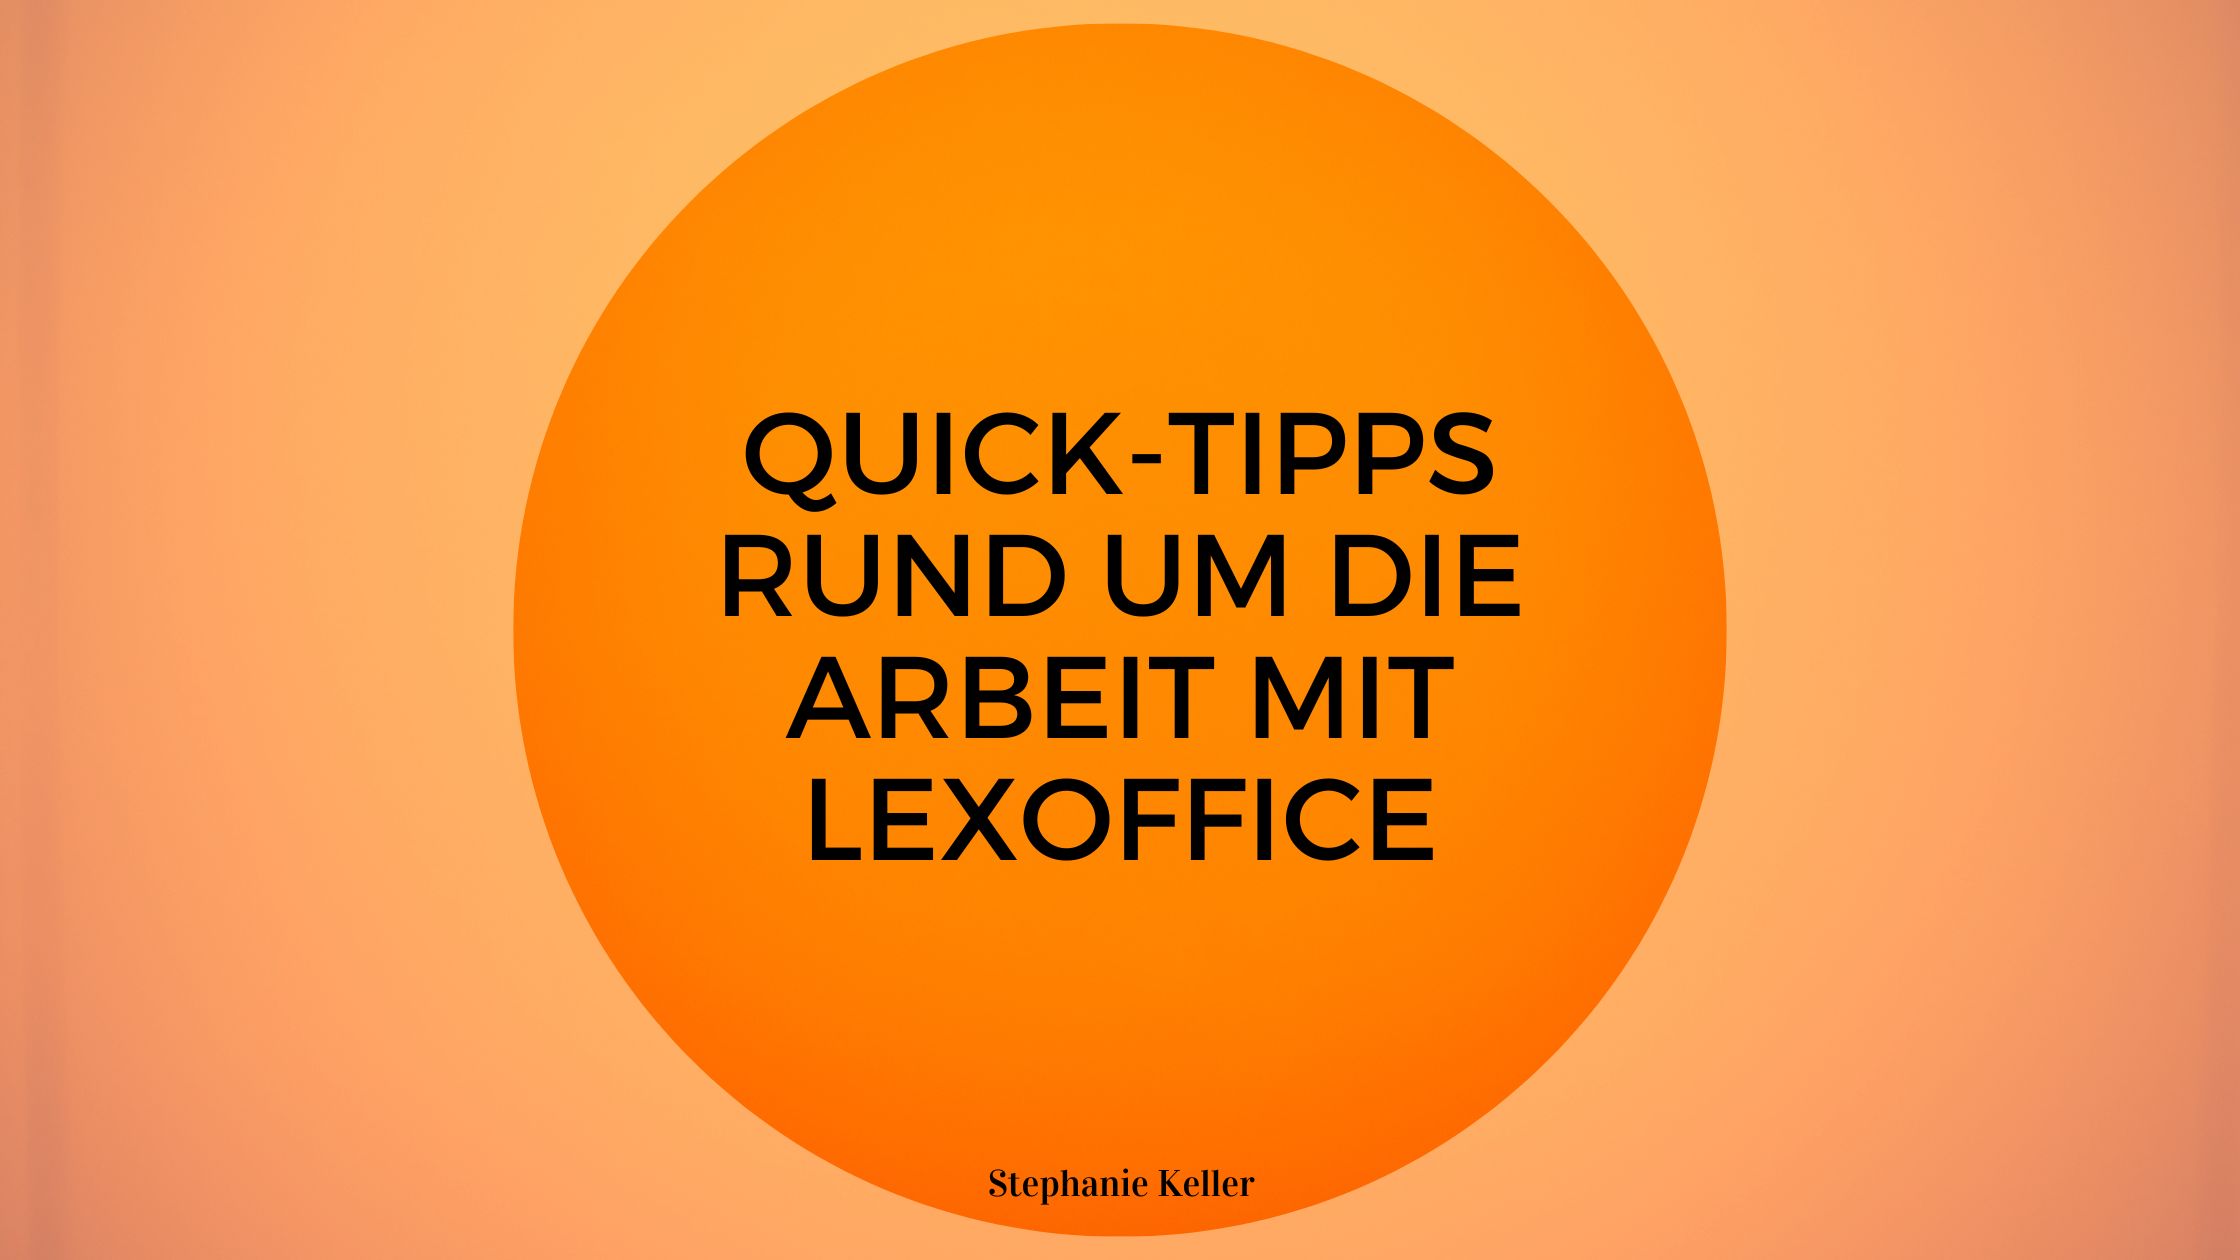 Quick-Tipps rund um die Arbeit mit lexoffice